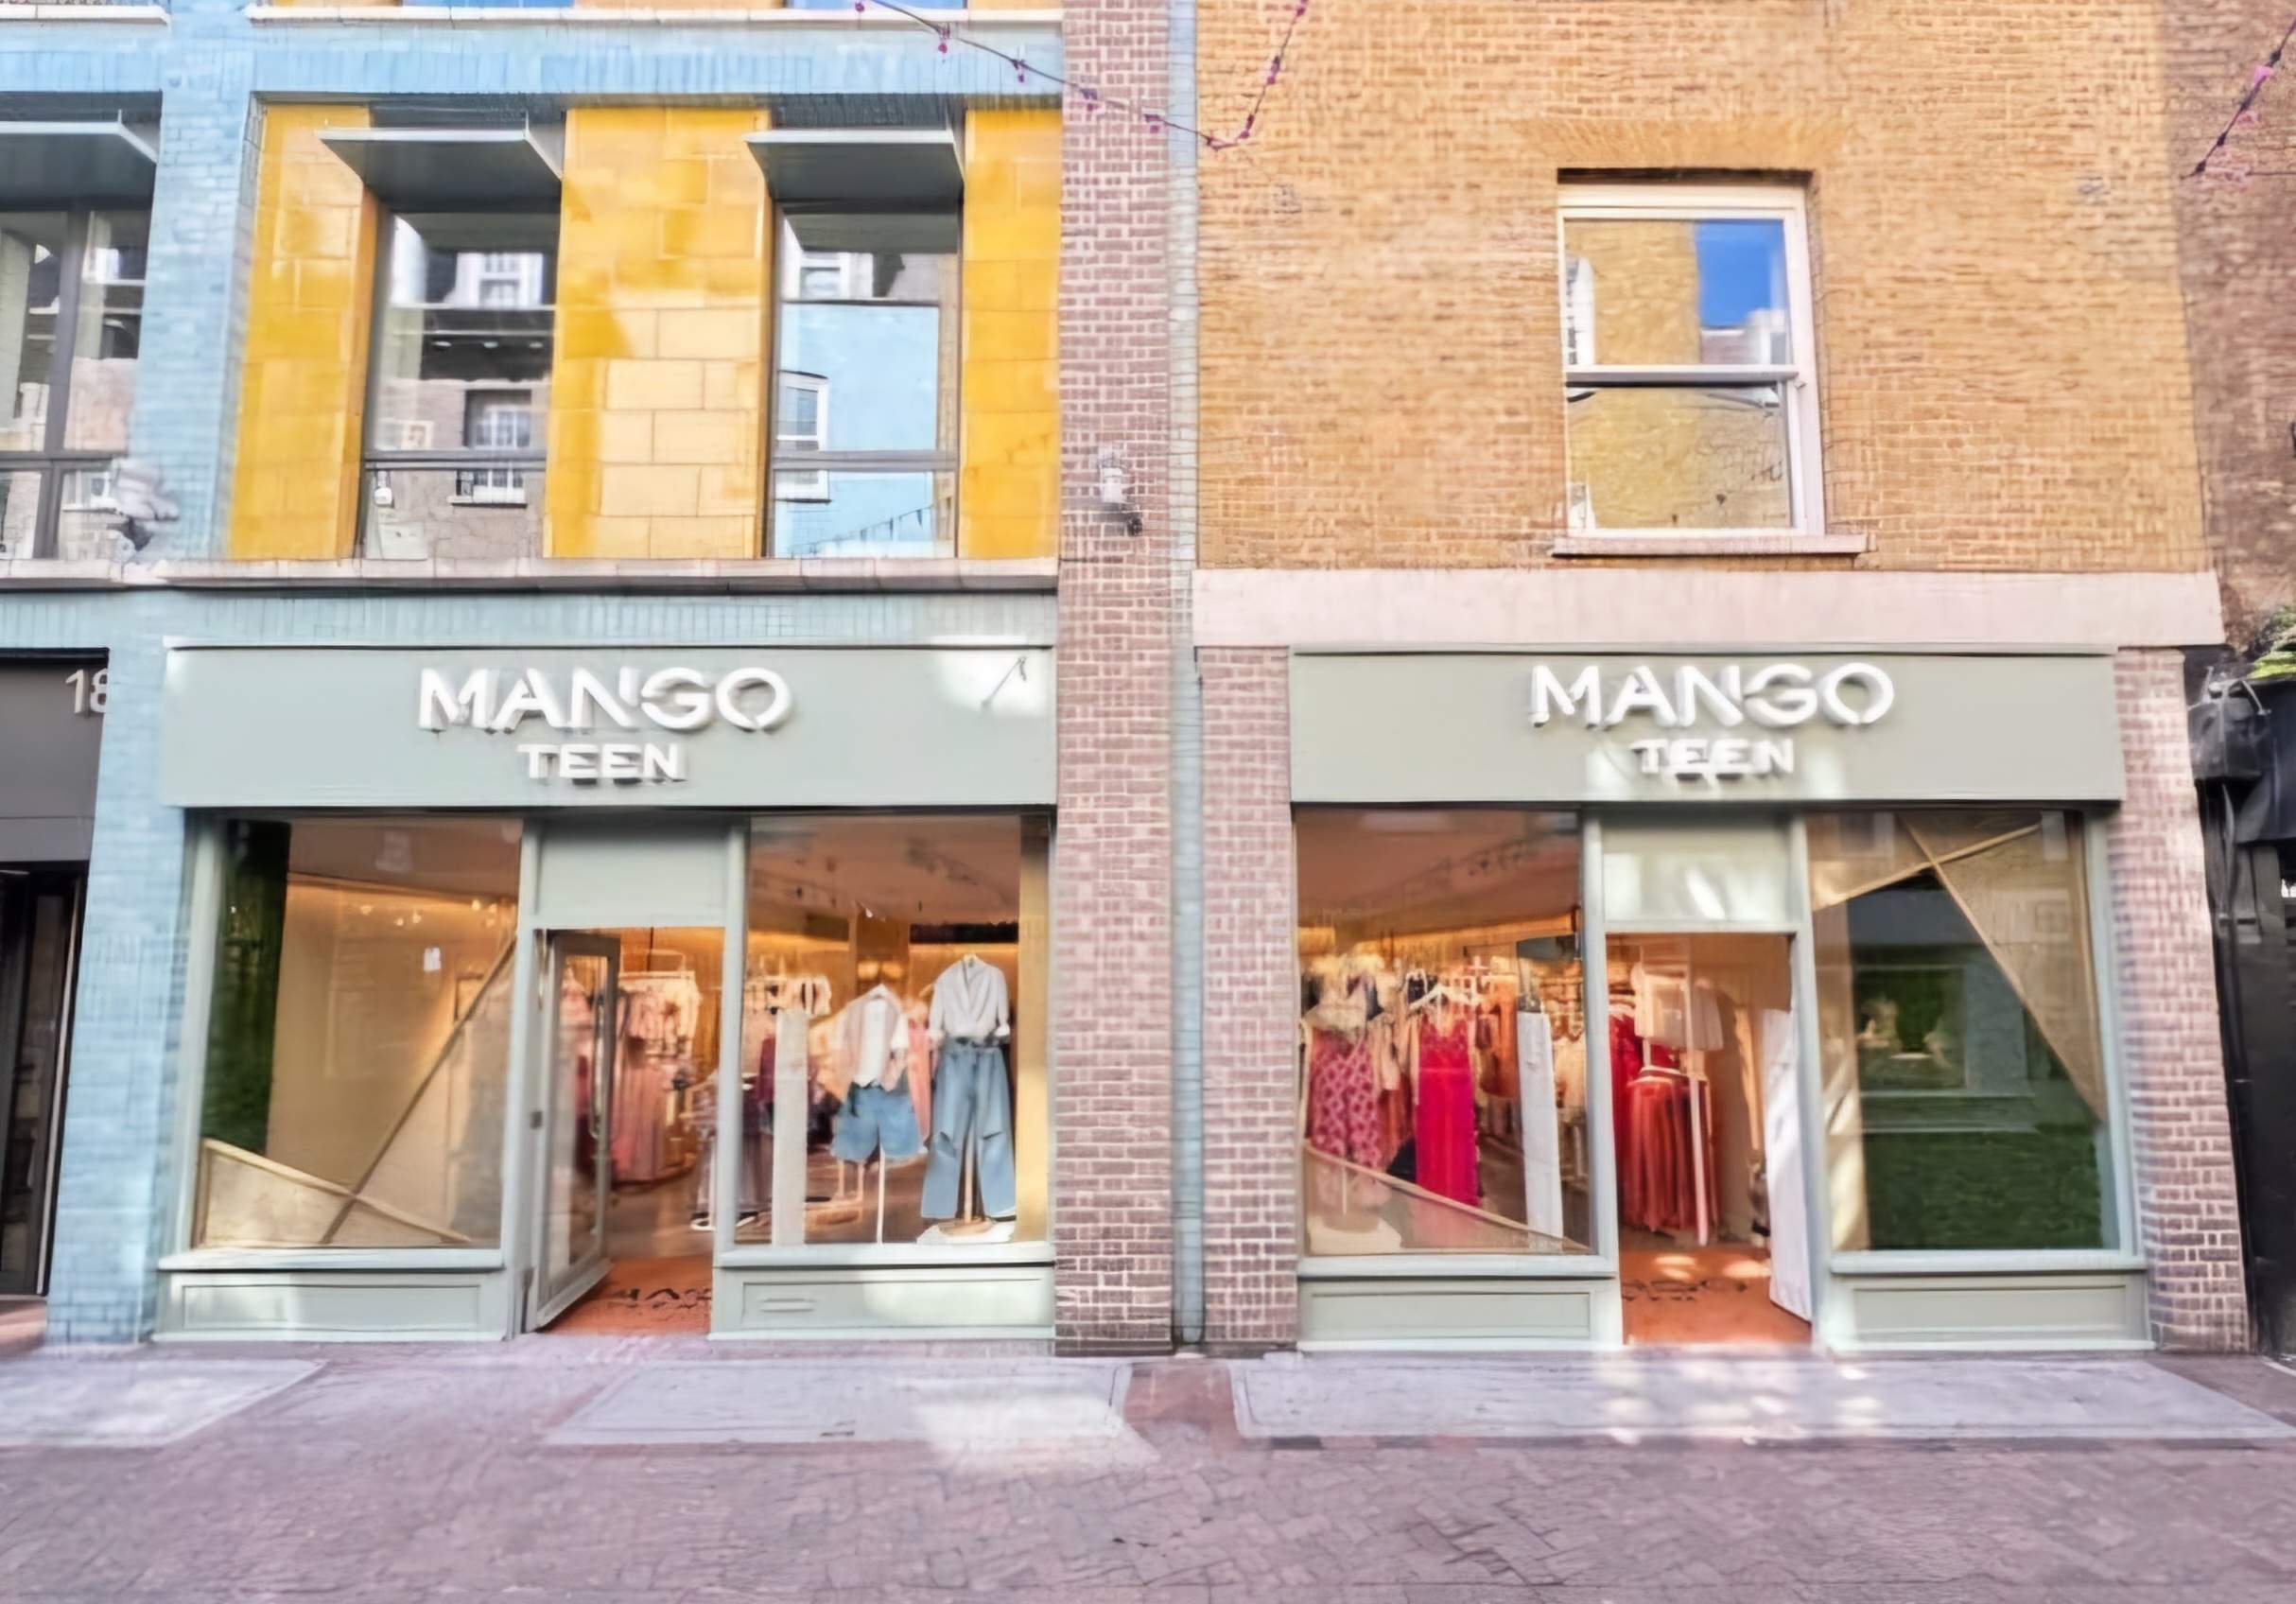 Mango Teen da el salto internacional con su primera tienda en Londres